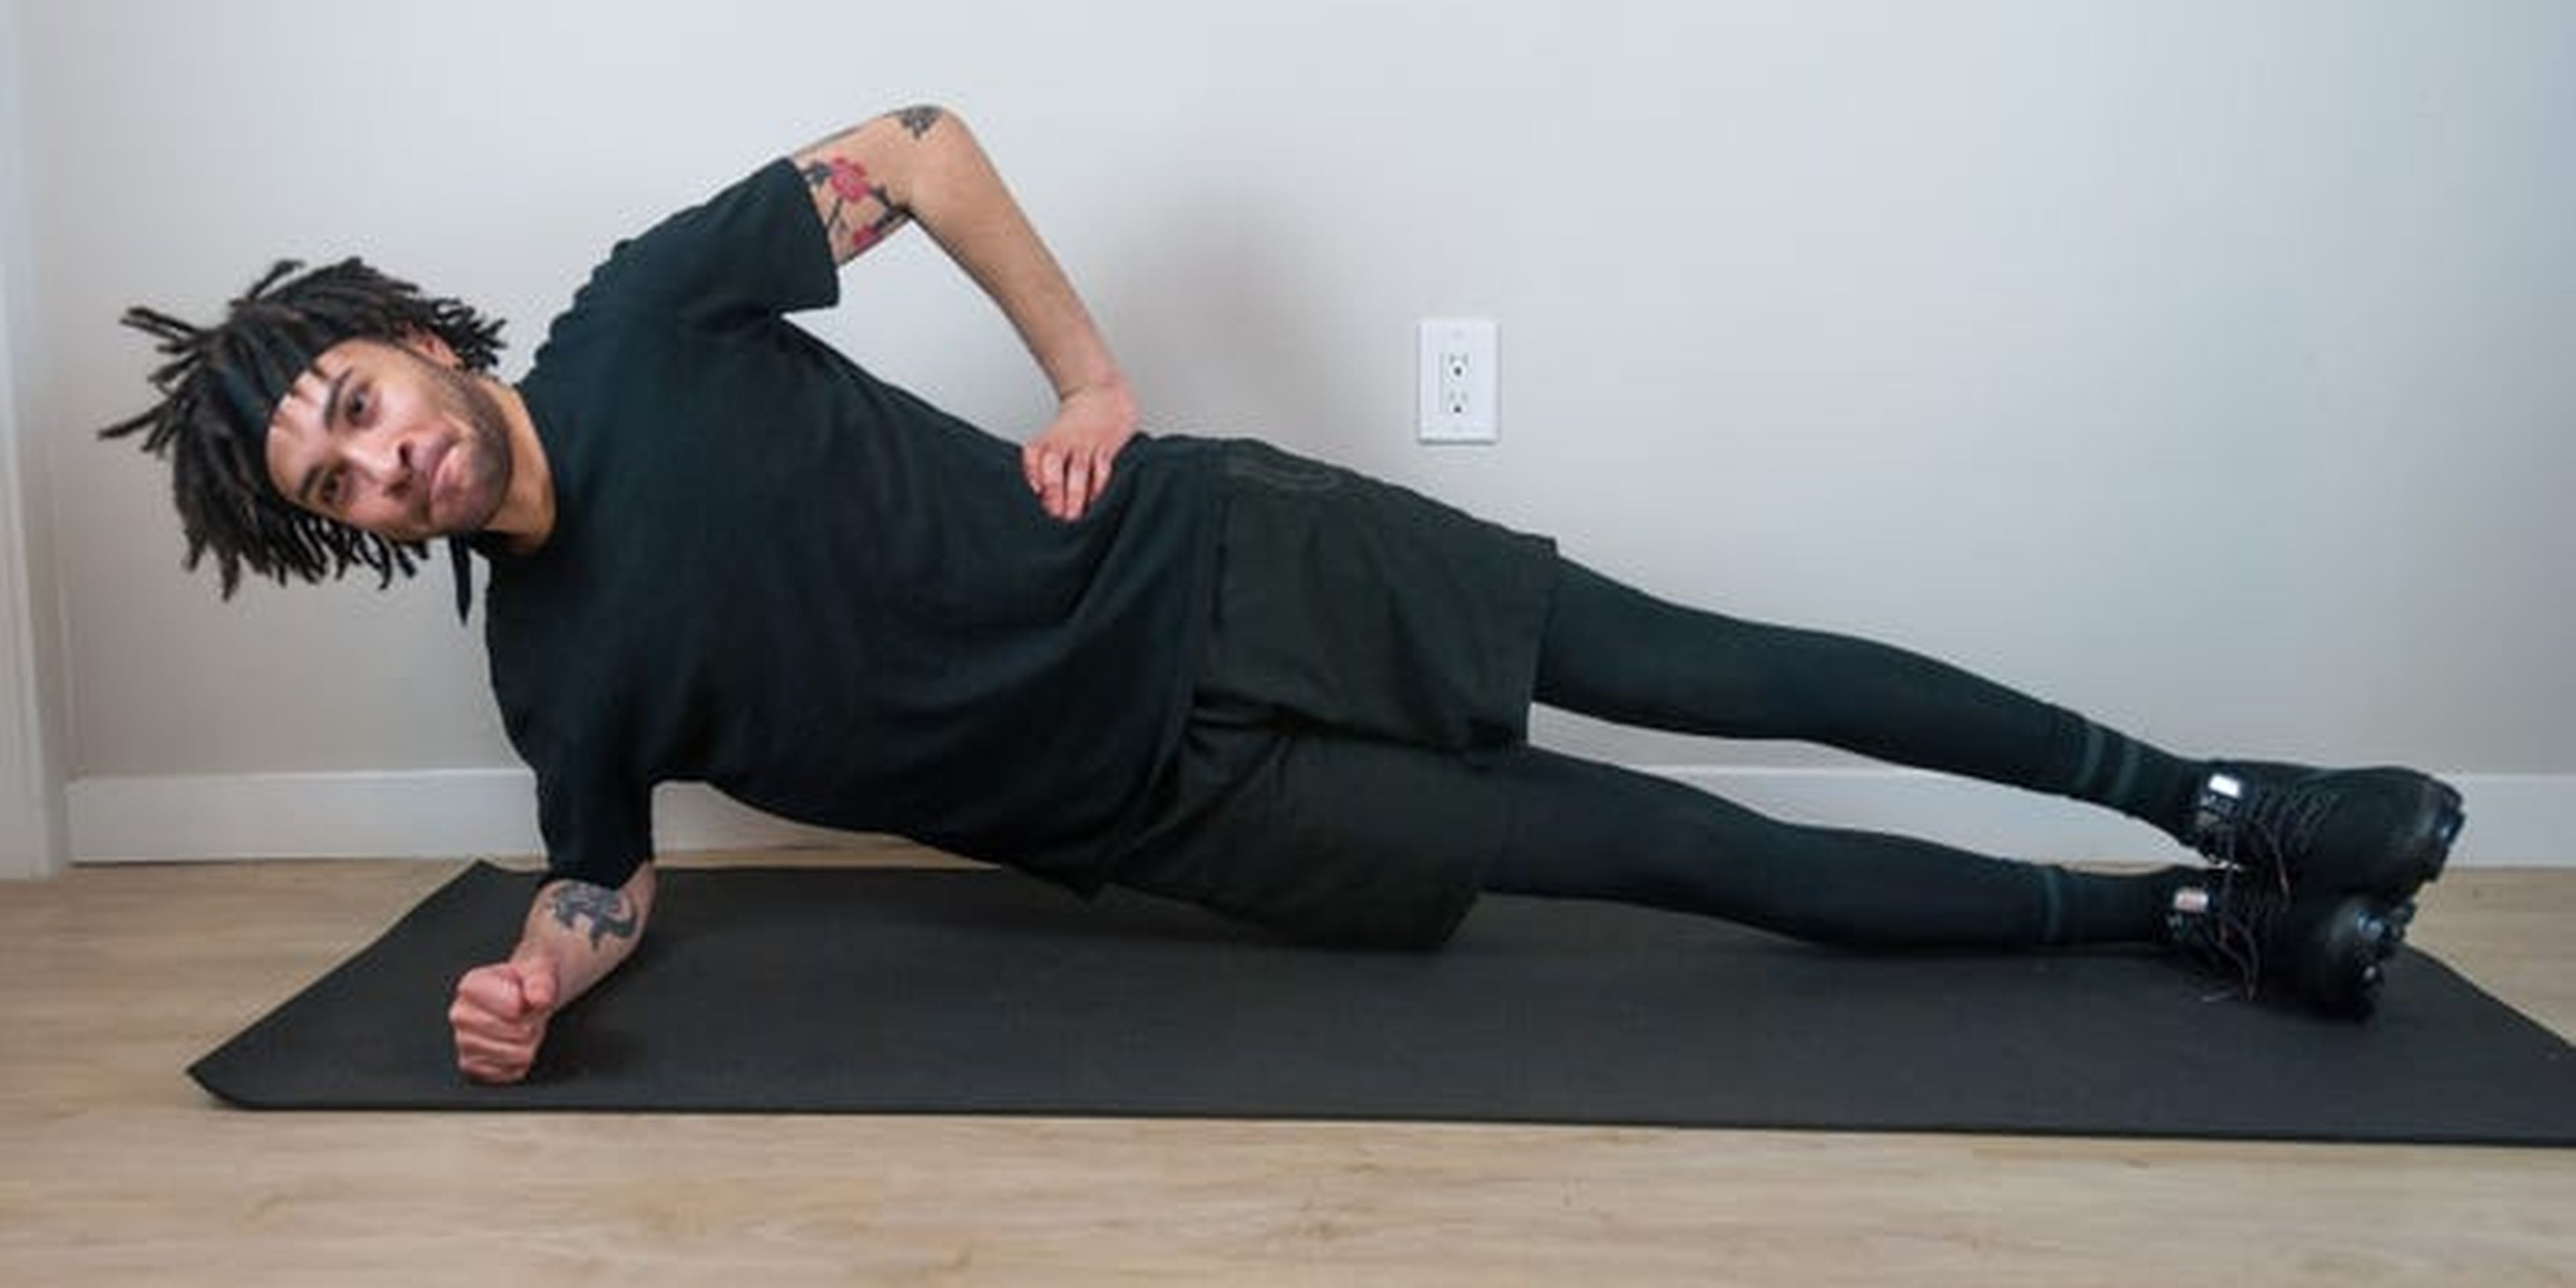 Al hacer una plancha lateral, puedes poner el brazo en la cadera o extenderlo hacia arriba.